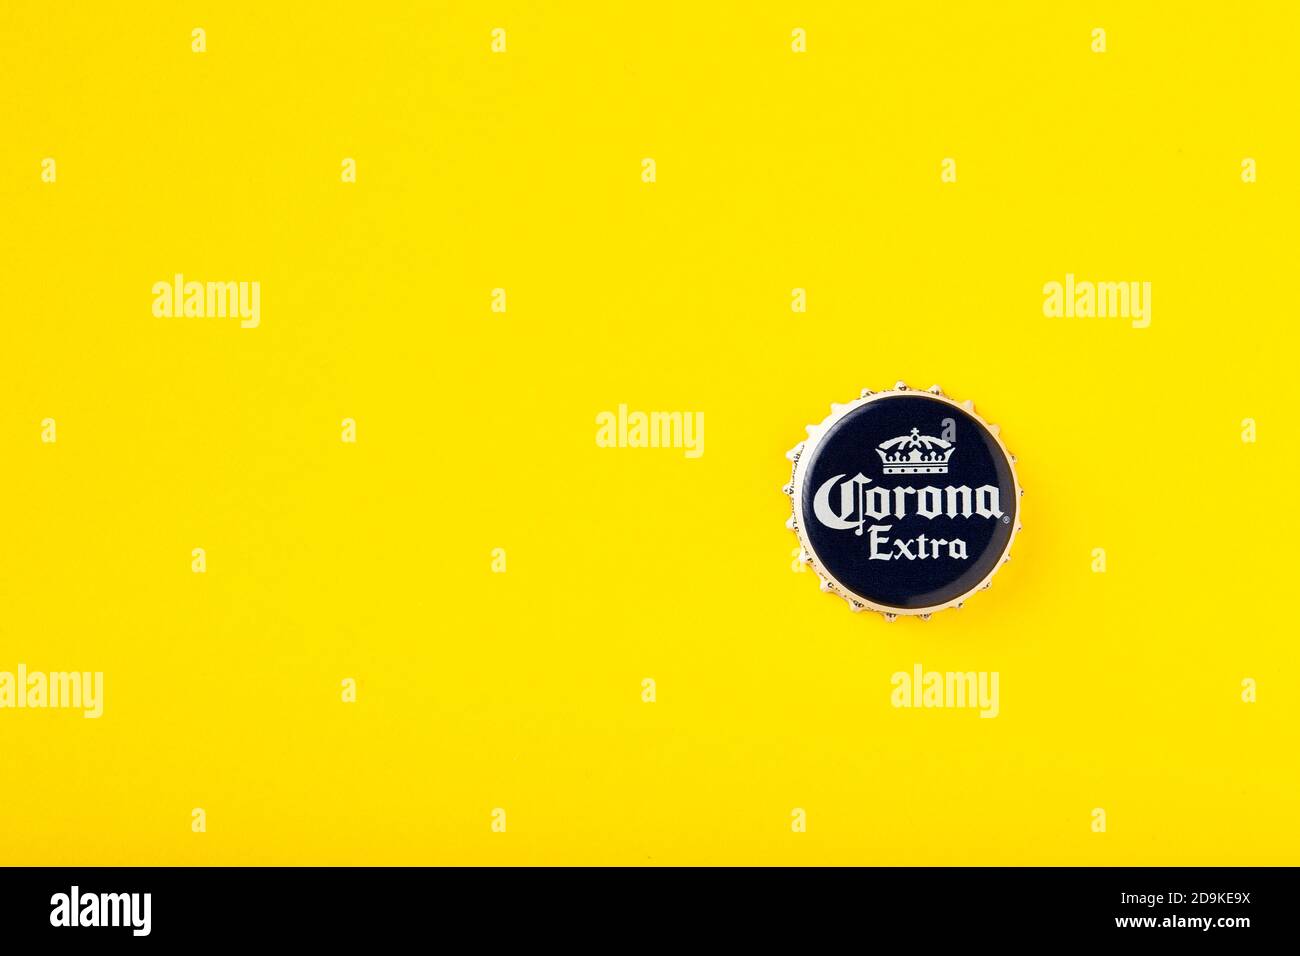 Bouchon de la bière Corona Extra gros plan. Corona Extra Beer sur fond jaune. Corona est fabriquée au Mexique et est la bière importée la plus vendue aux États-Unis Banque D'Images